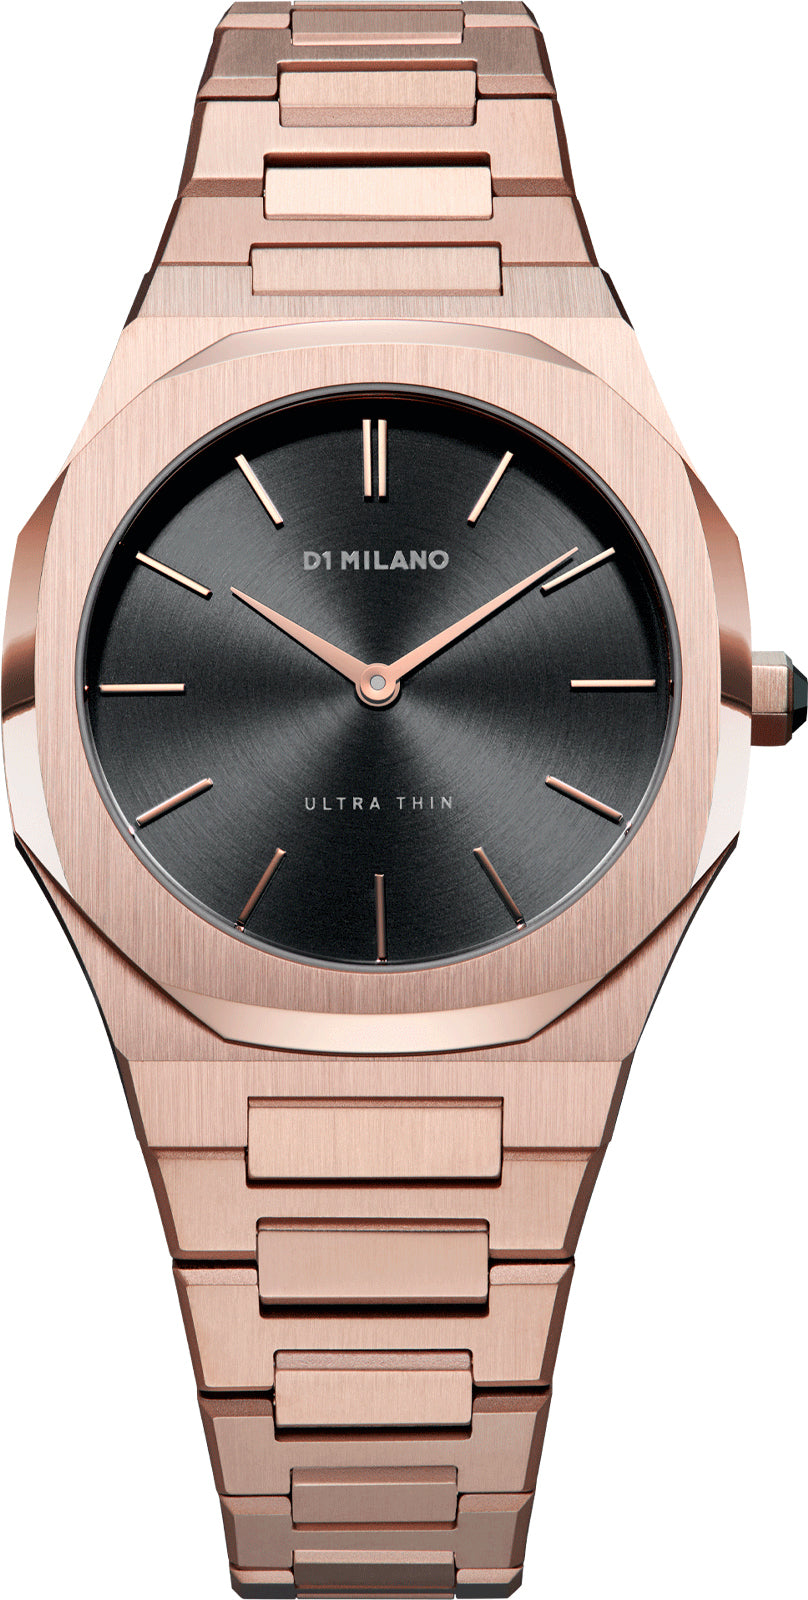 D1 Milano Watch Ultra Thin D1-UTBL06 Watch | Jura Watches